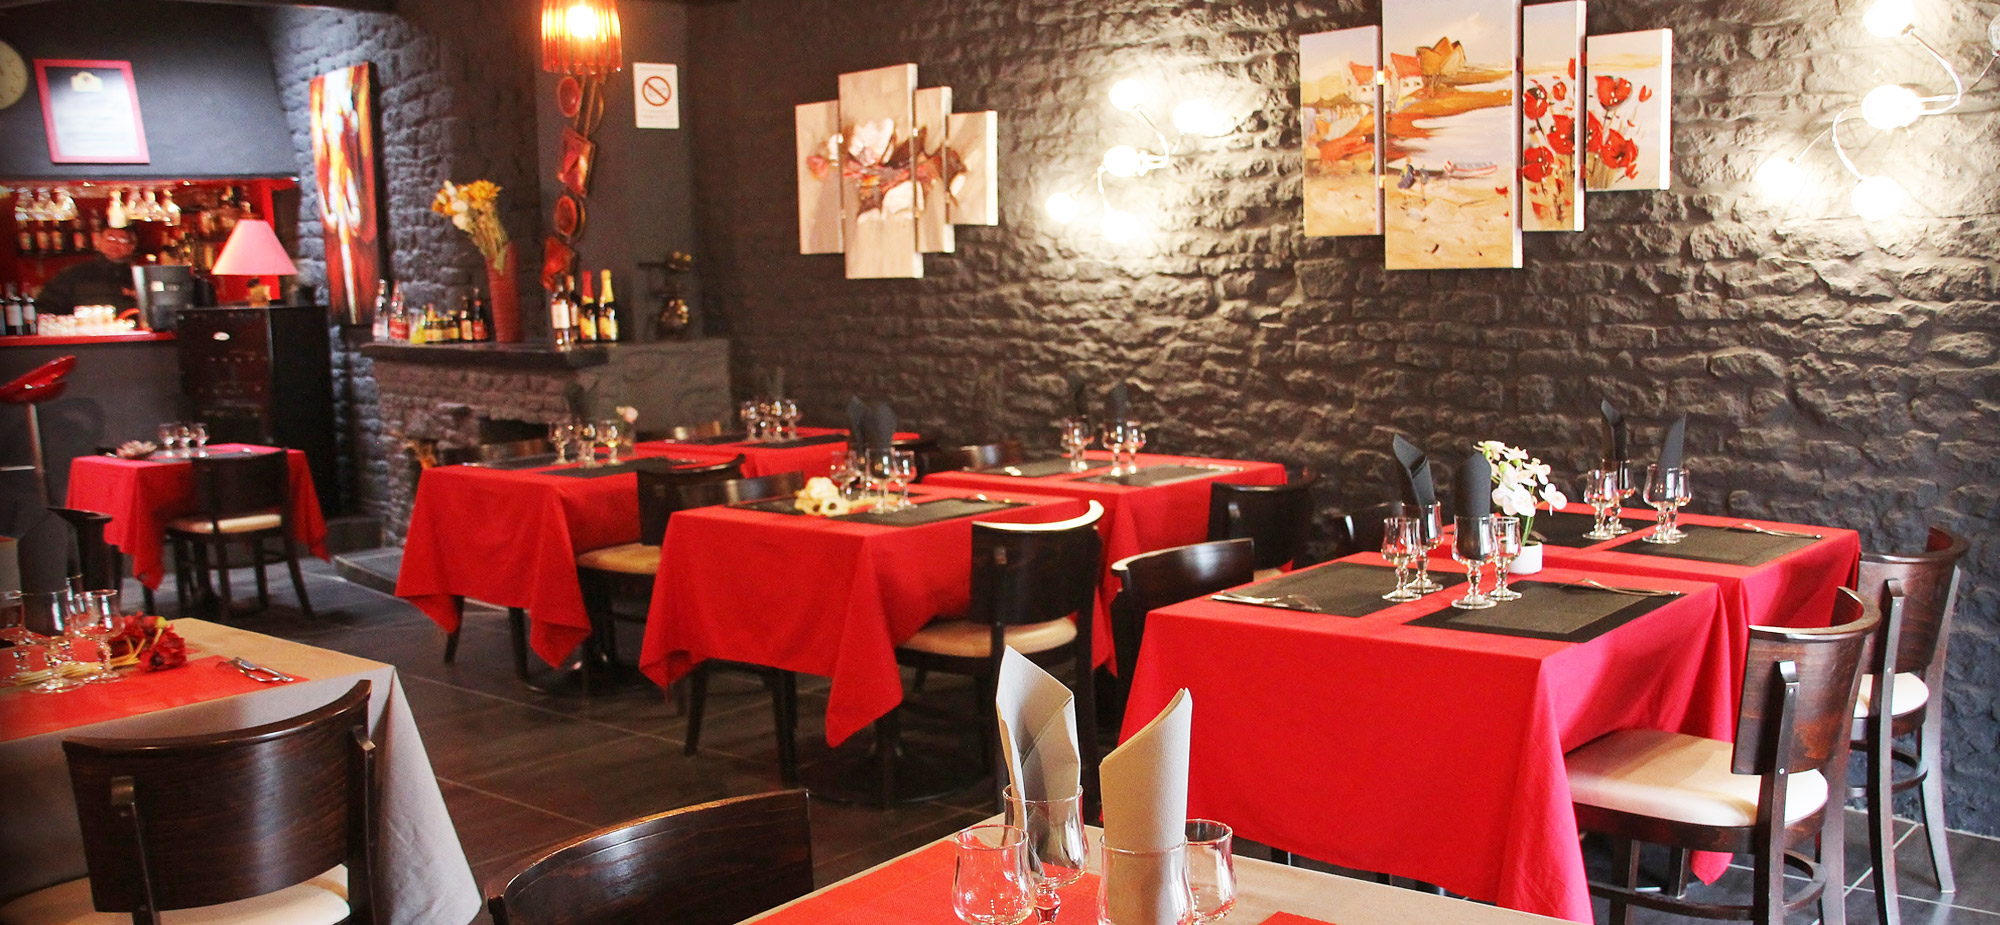 deco-ambiance-salle-restaurant-creperie-fleur-ble-noir-saint-pierre-oleron-ile-oleron-17